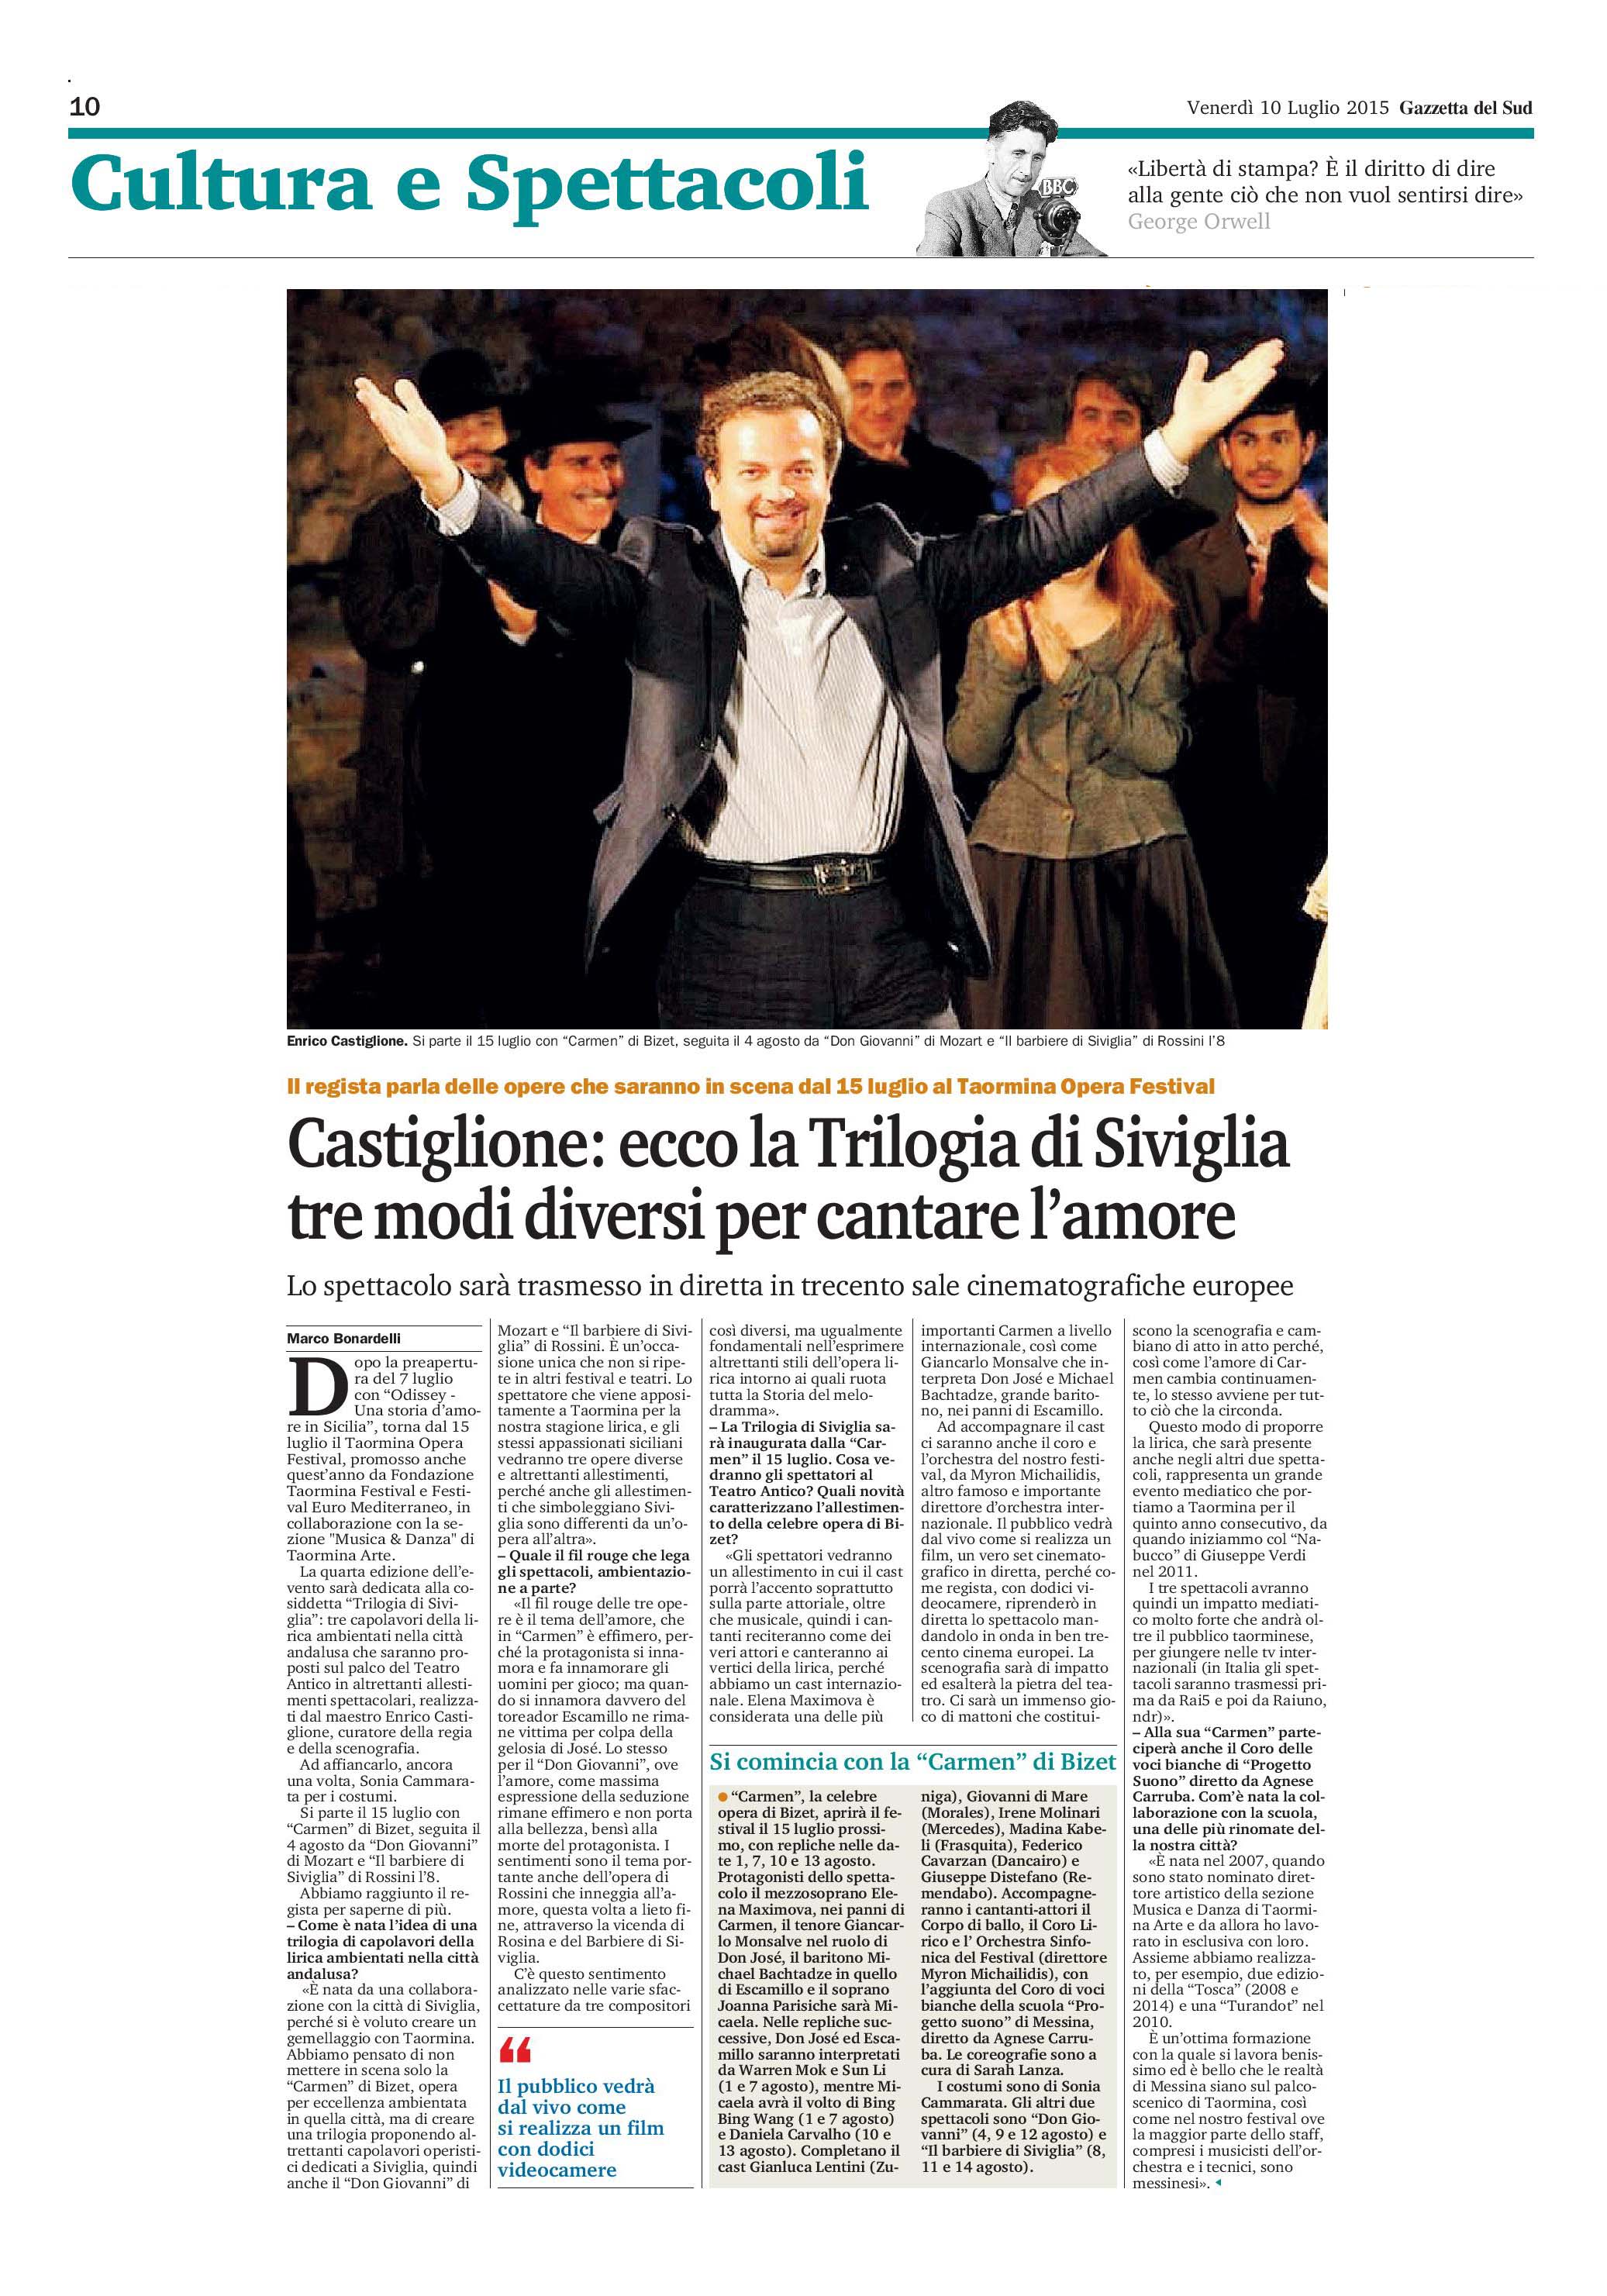 Intervista a Enrico Castiglione - 10 luglio 2015-page-001.jpg